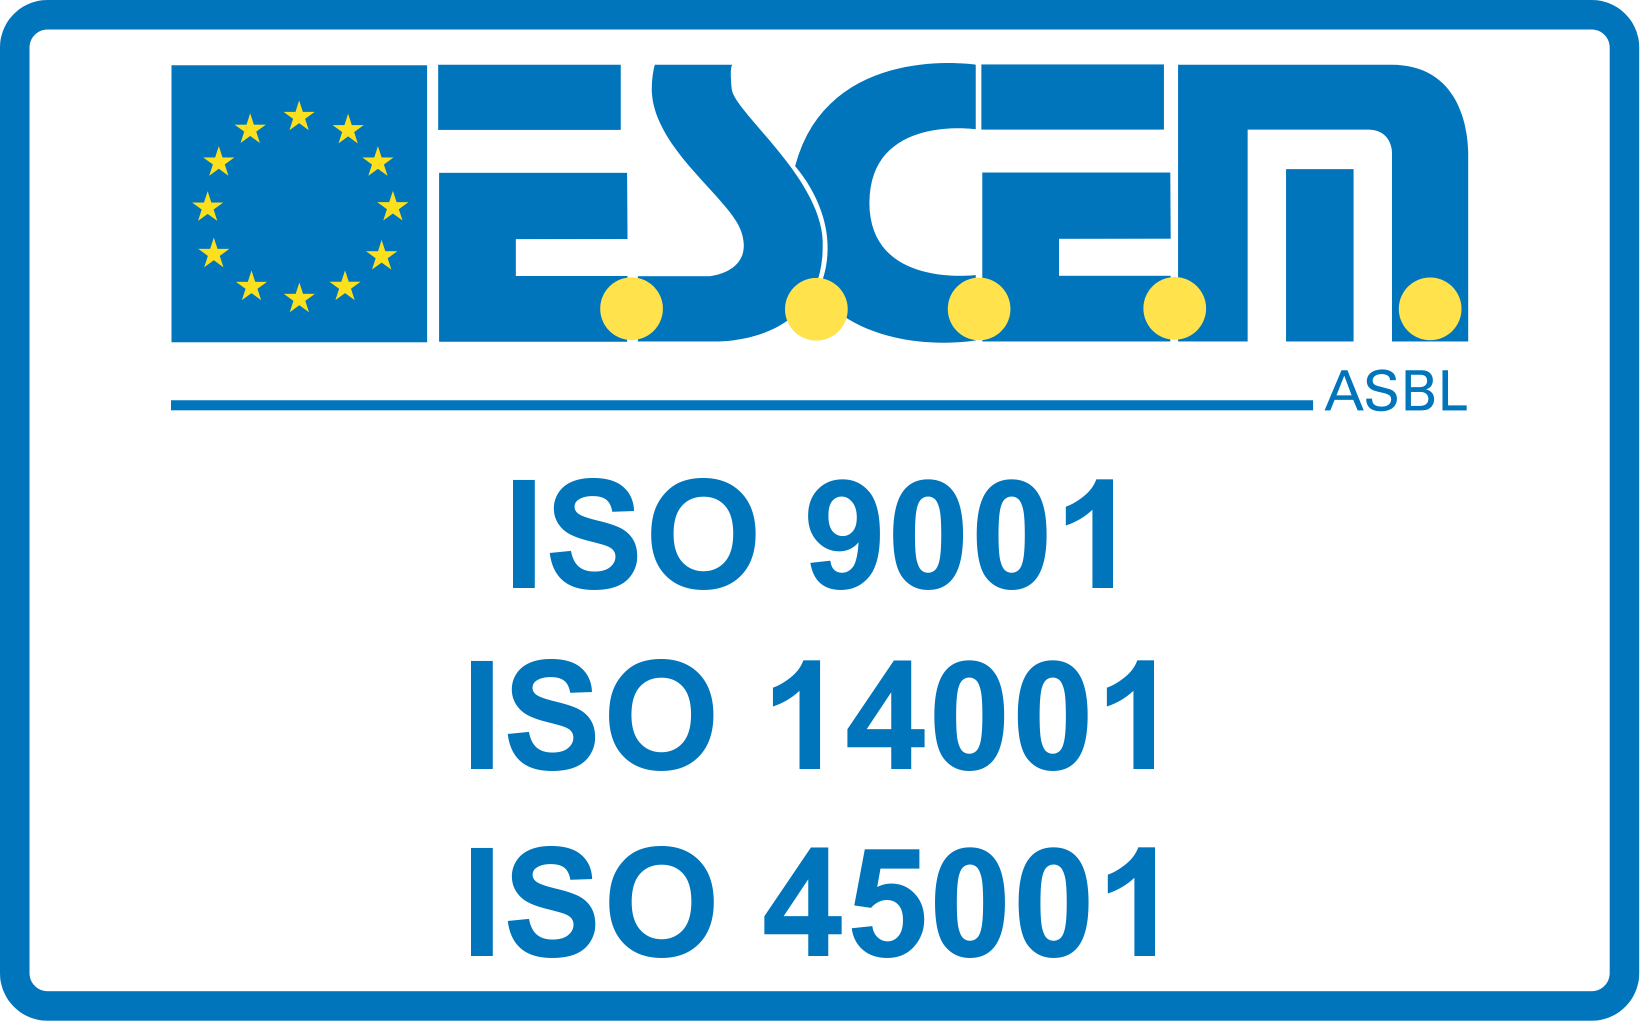 ESCEM ISO 9001, 14001, 45001